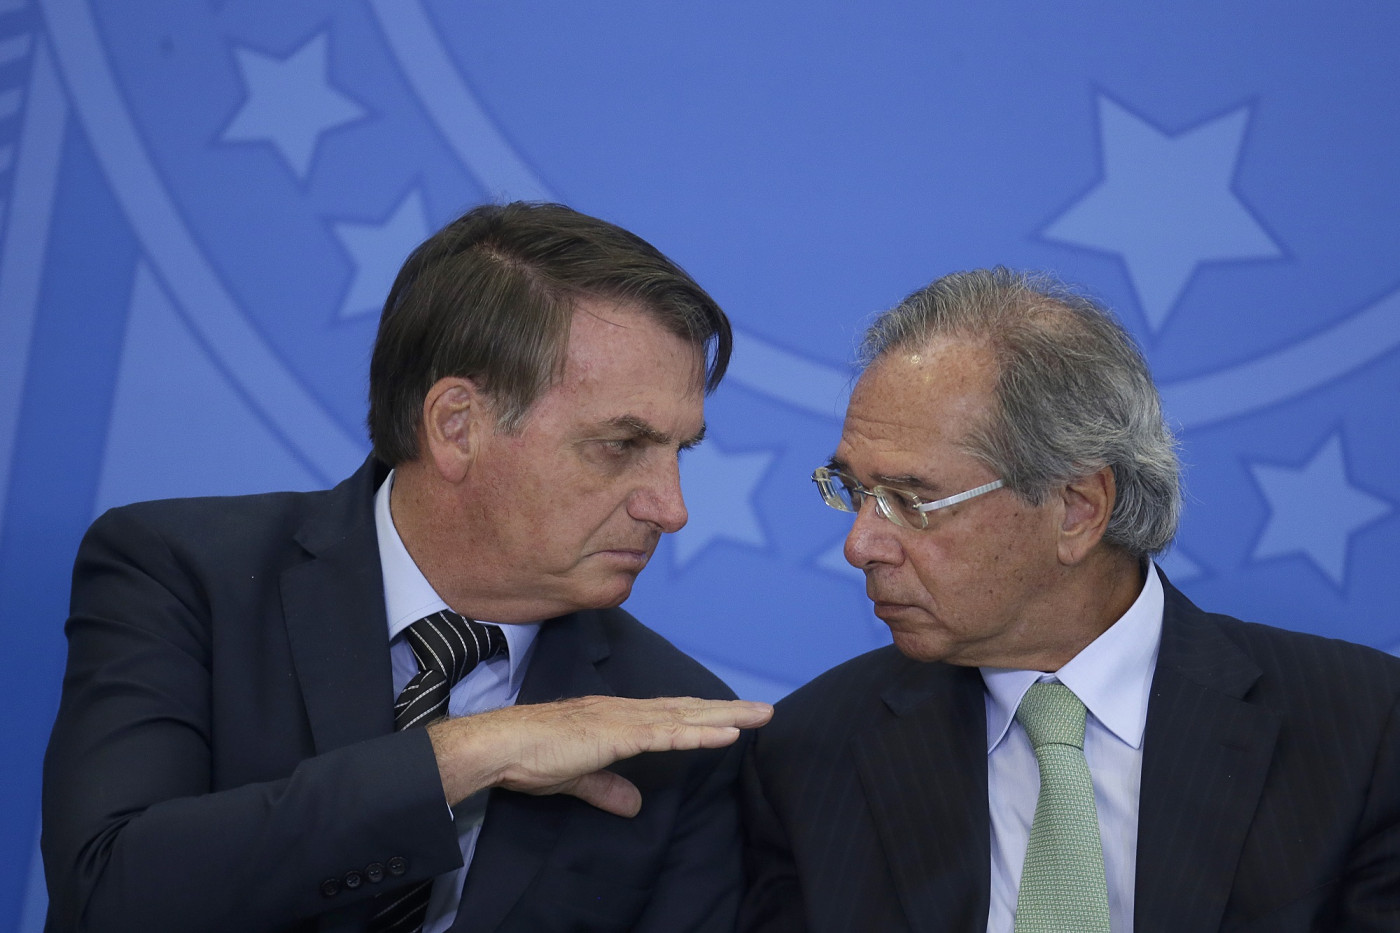 Bolsonaro: Guedes detém 99% do poder de decisão sobre economia ...